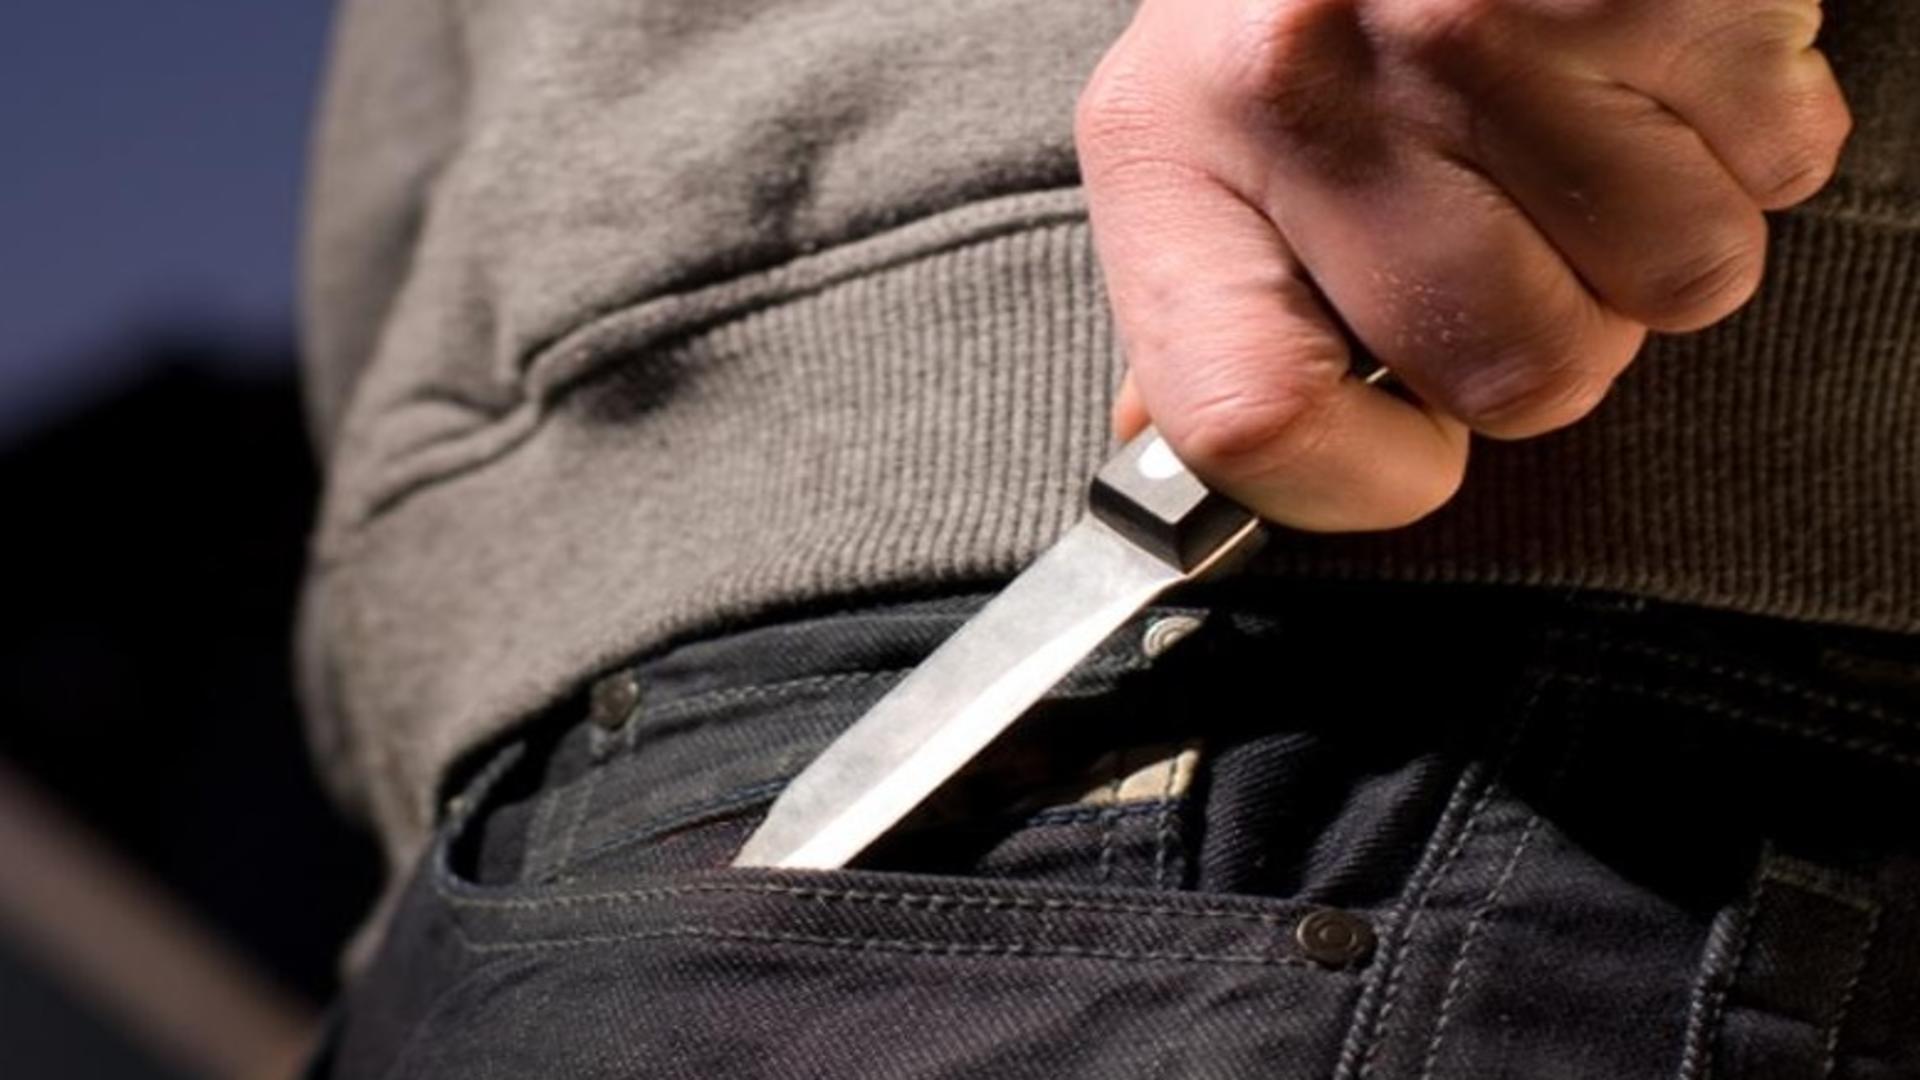 Bărbatul care a înjunghiat o femeie cu un cuţit, în Centrul Vechi, a fost arestat preventiv. Care este starea victimei